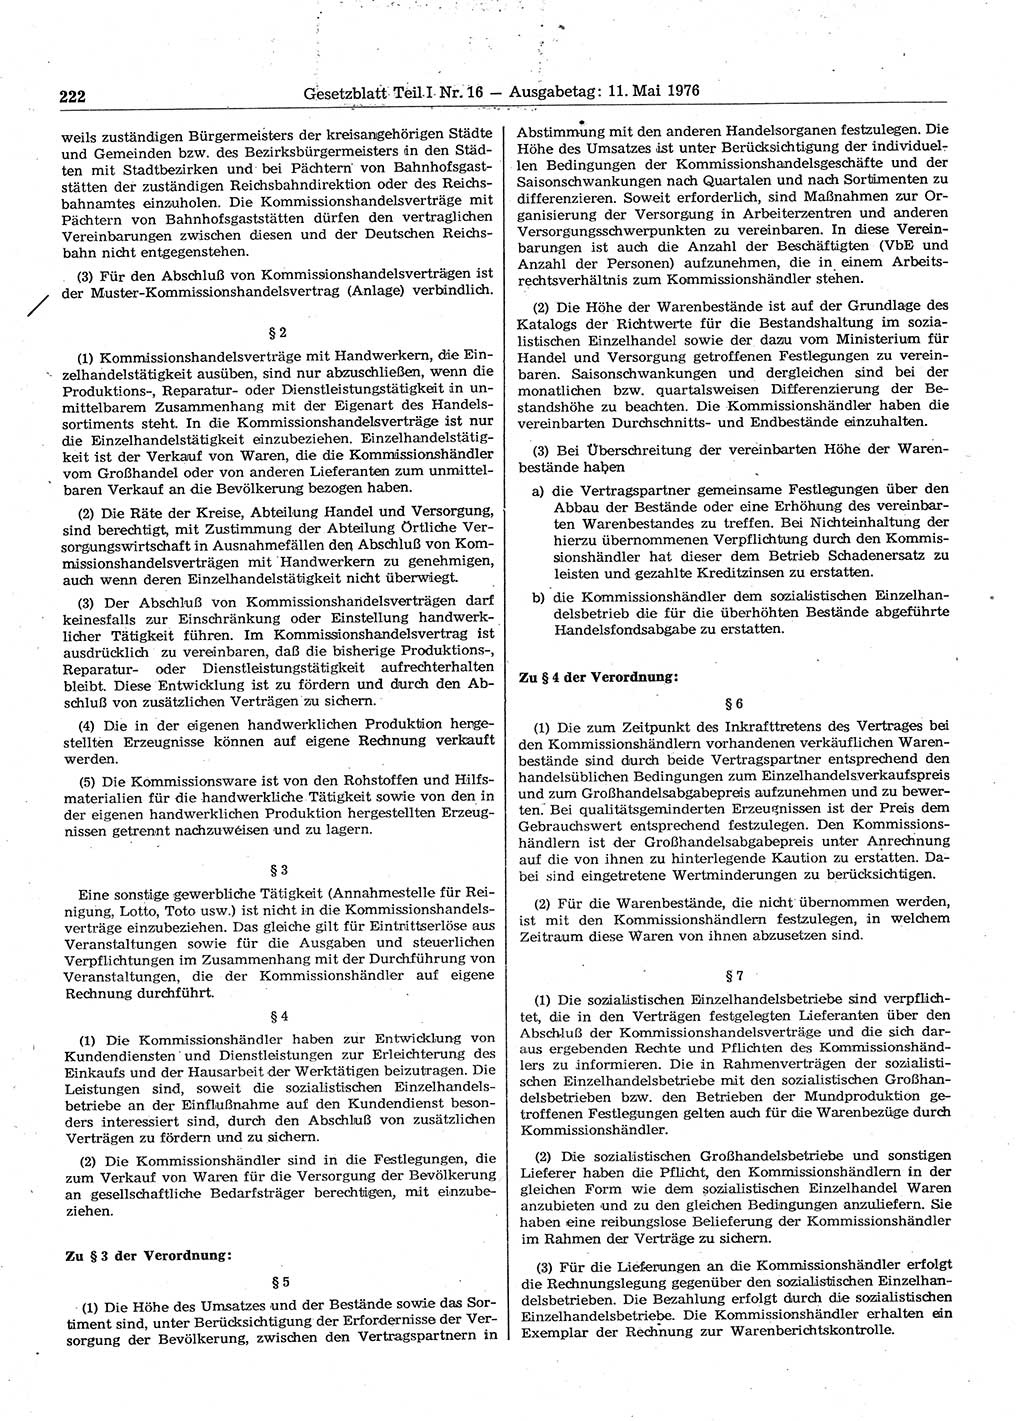 Gesetzblatt (GBl.) der Deutschen Demokratischen Republik (DDR) Teil Ⅰ 1976, Seite 222 (GBl. DDR Ⅰ 1976, S. 222)